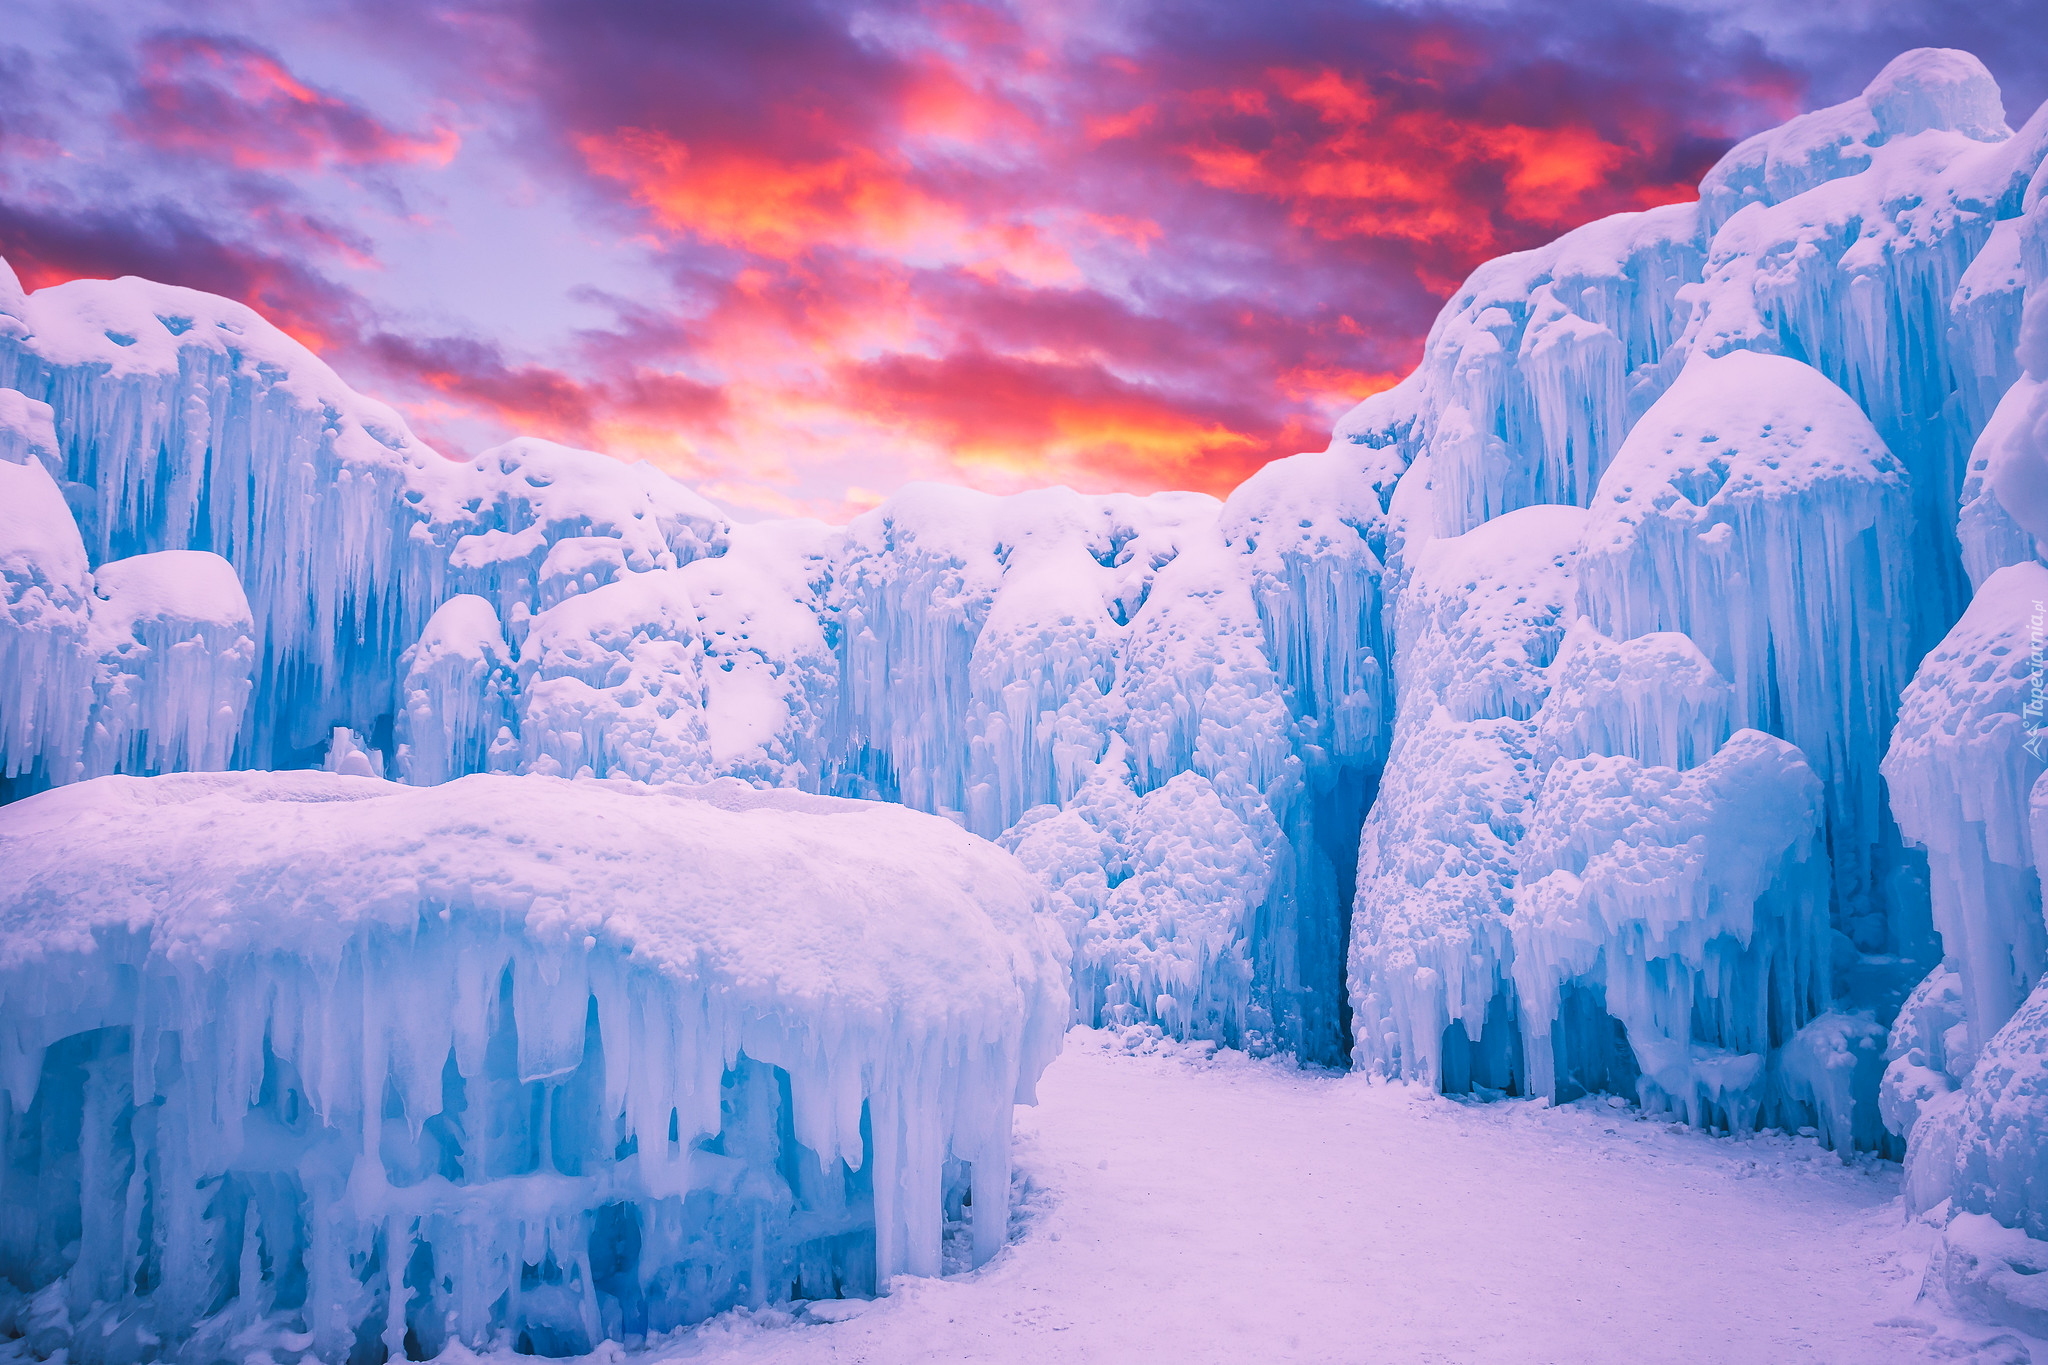 Zima, Lód, Sople, Lodowy zamek, Ice Castle, Edmonton, Prowincja Alberta, Kanada